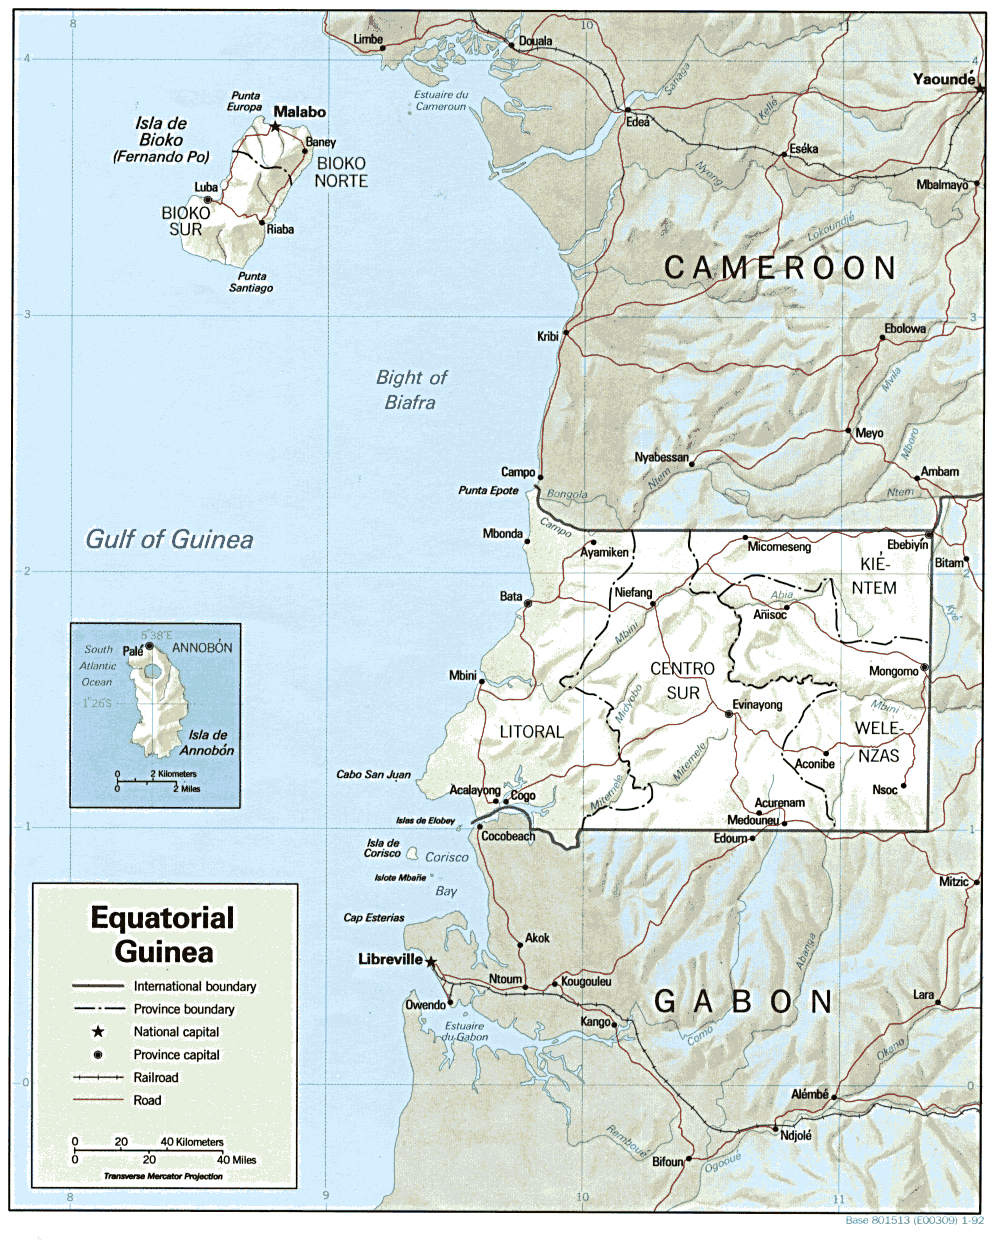 Equatorial Guinea Travel Information